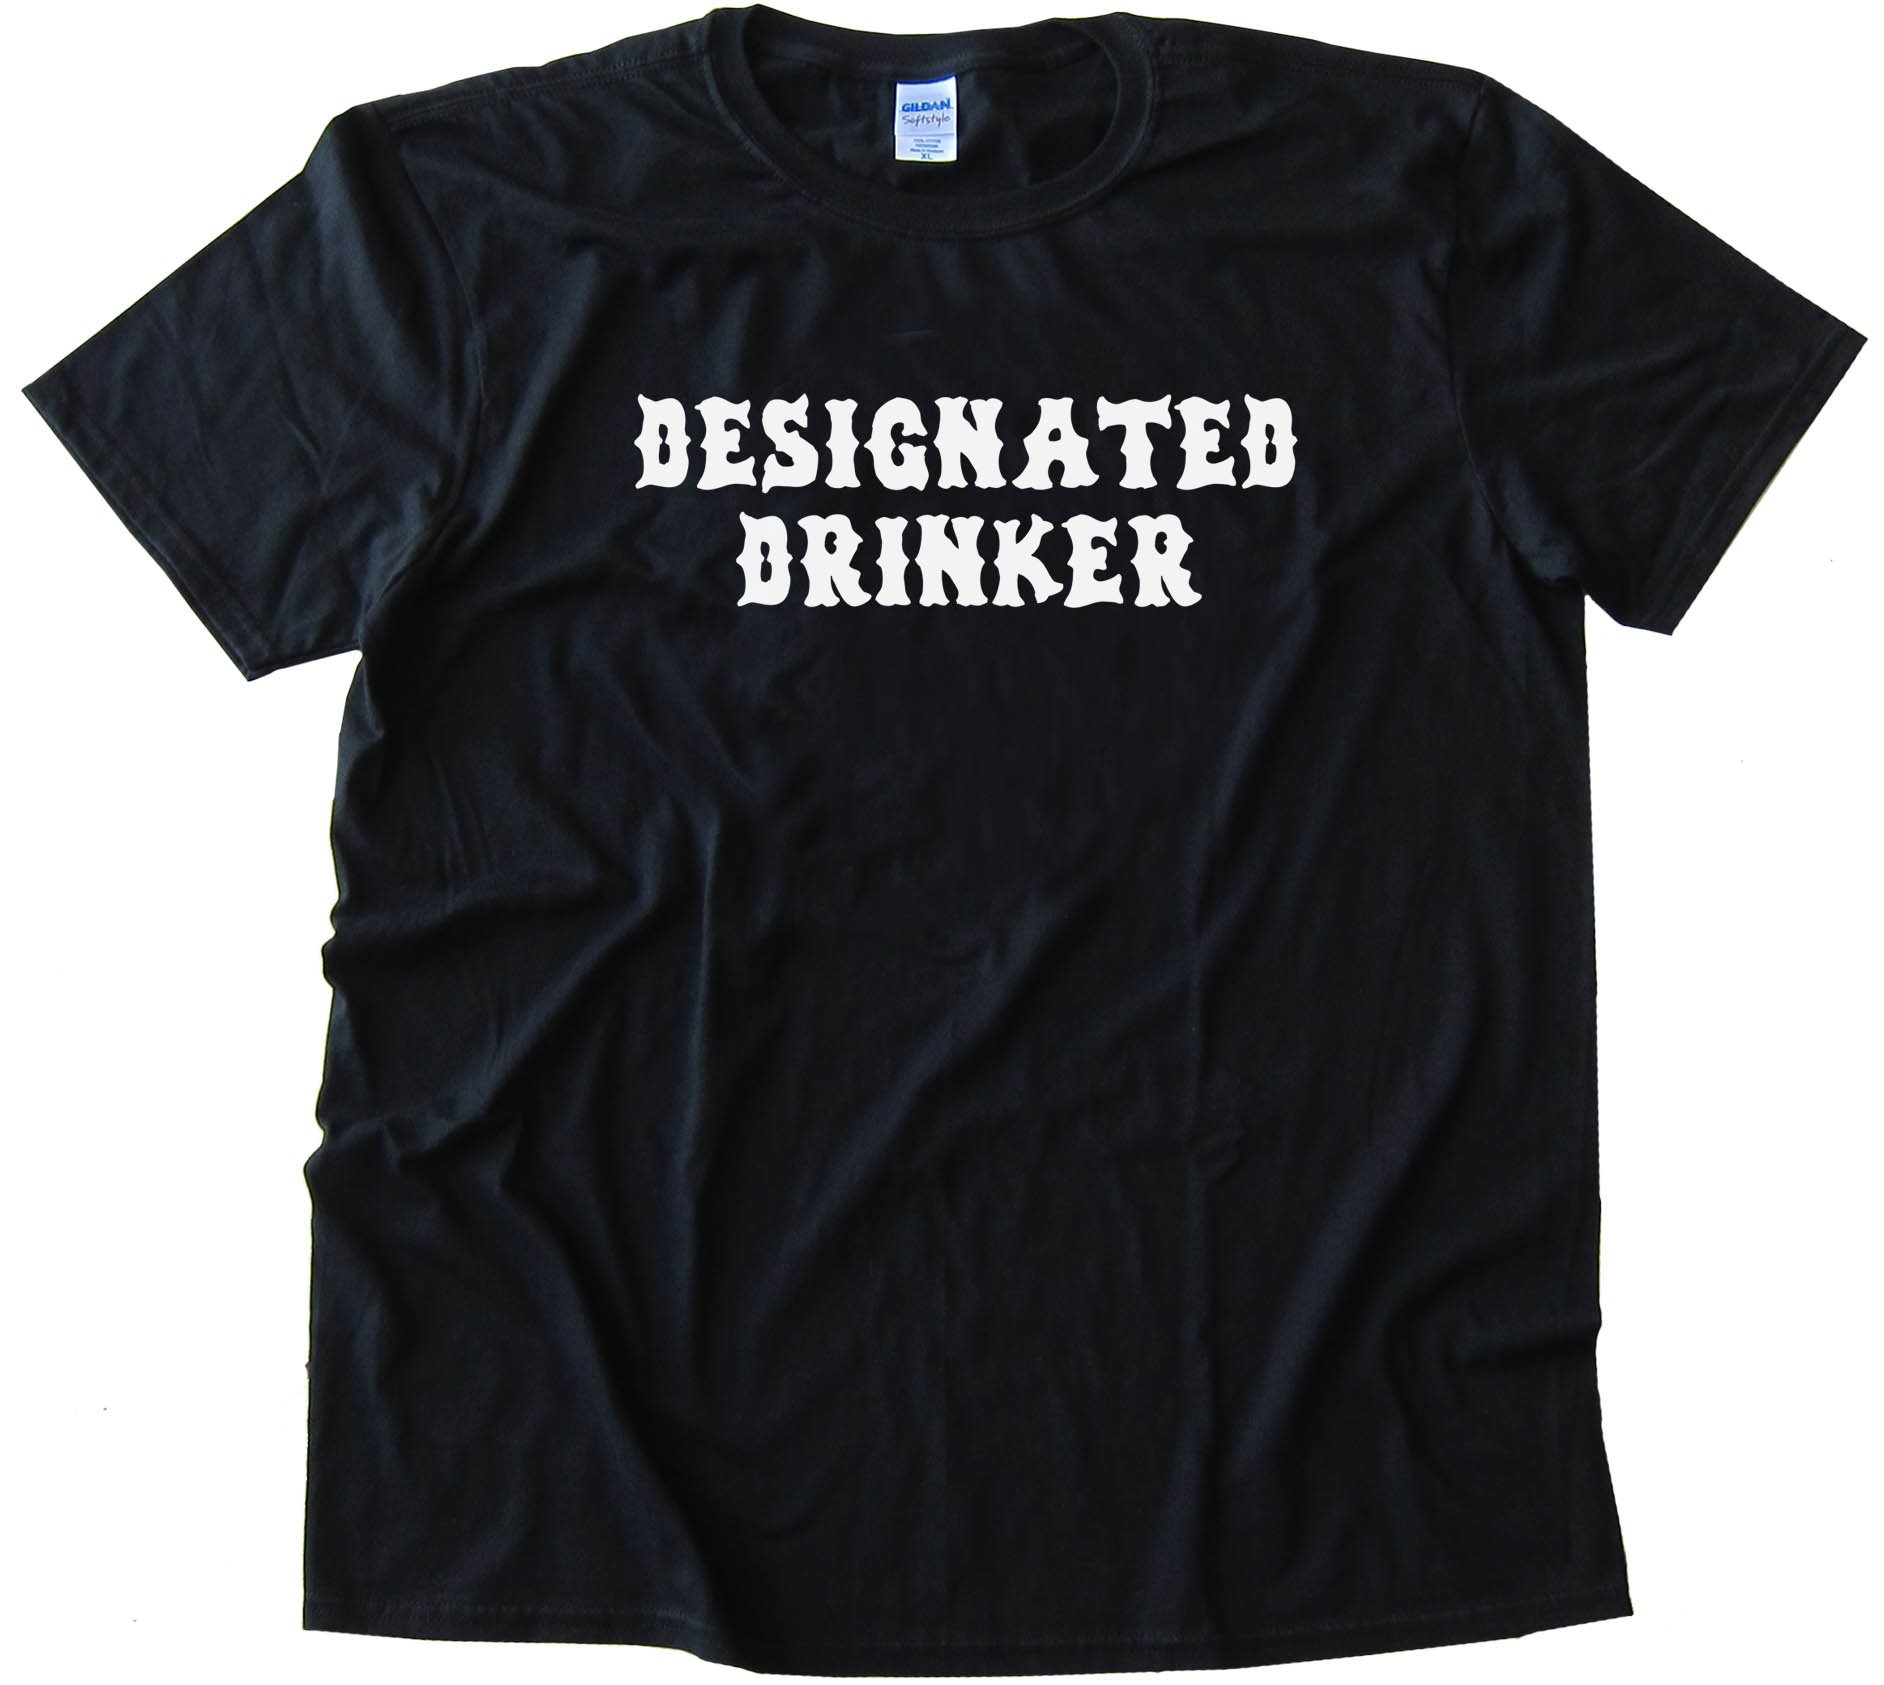 Designated Drinker - Tee Shirt